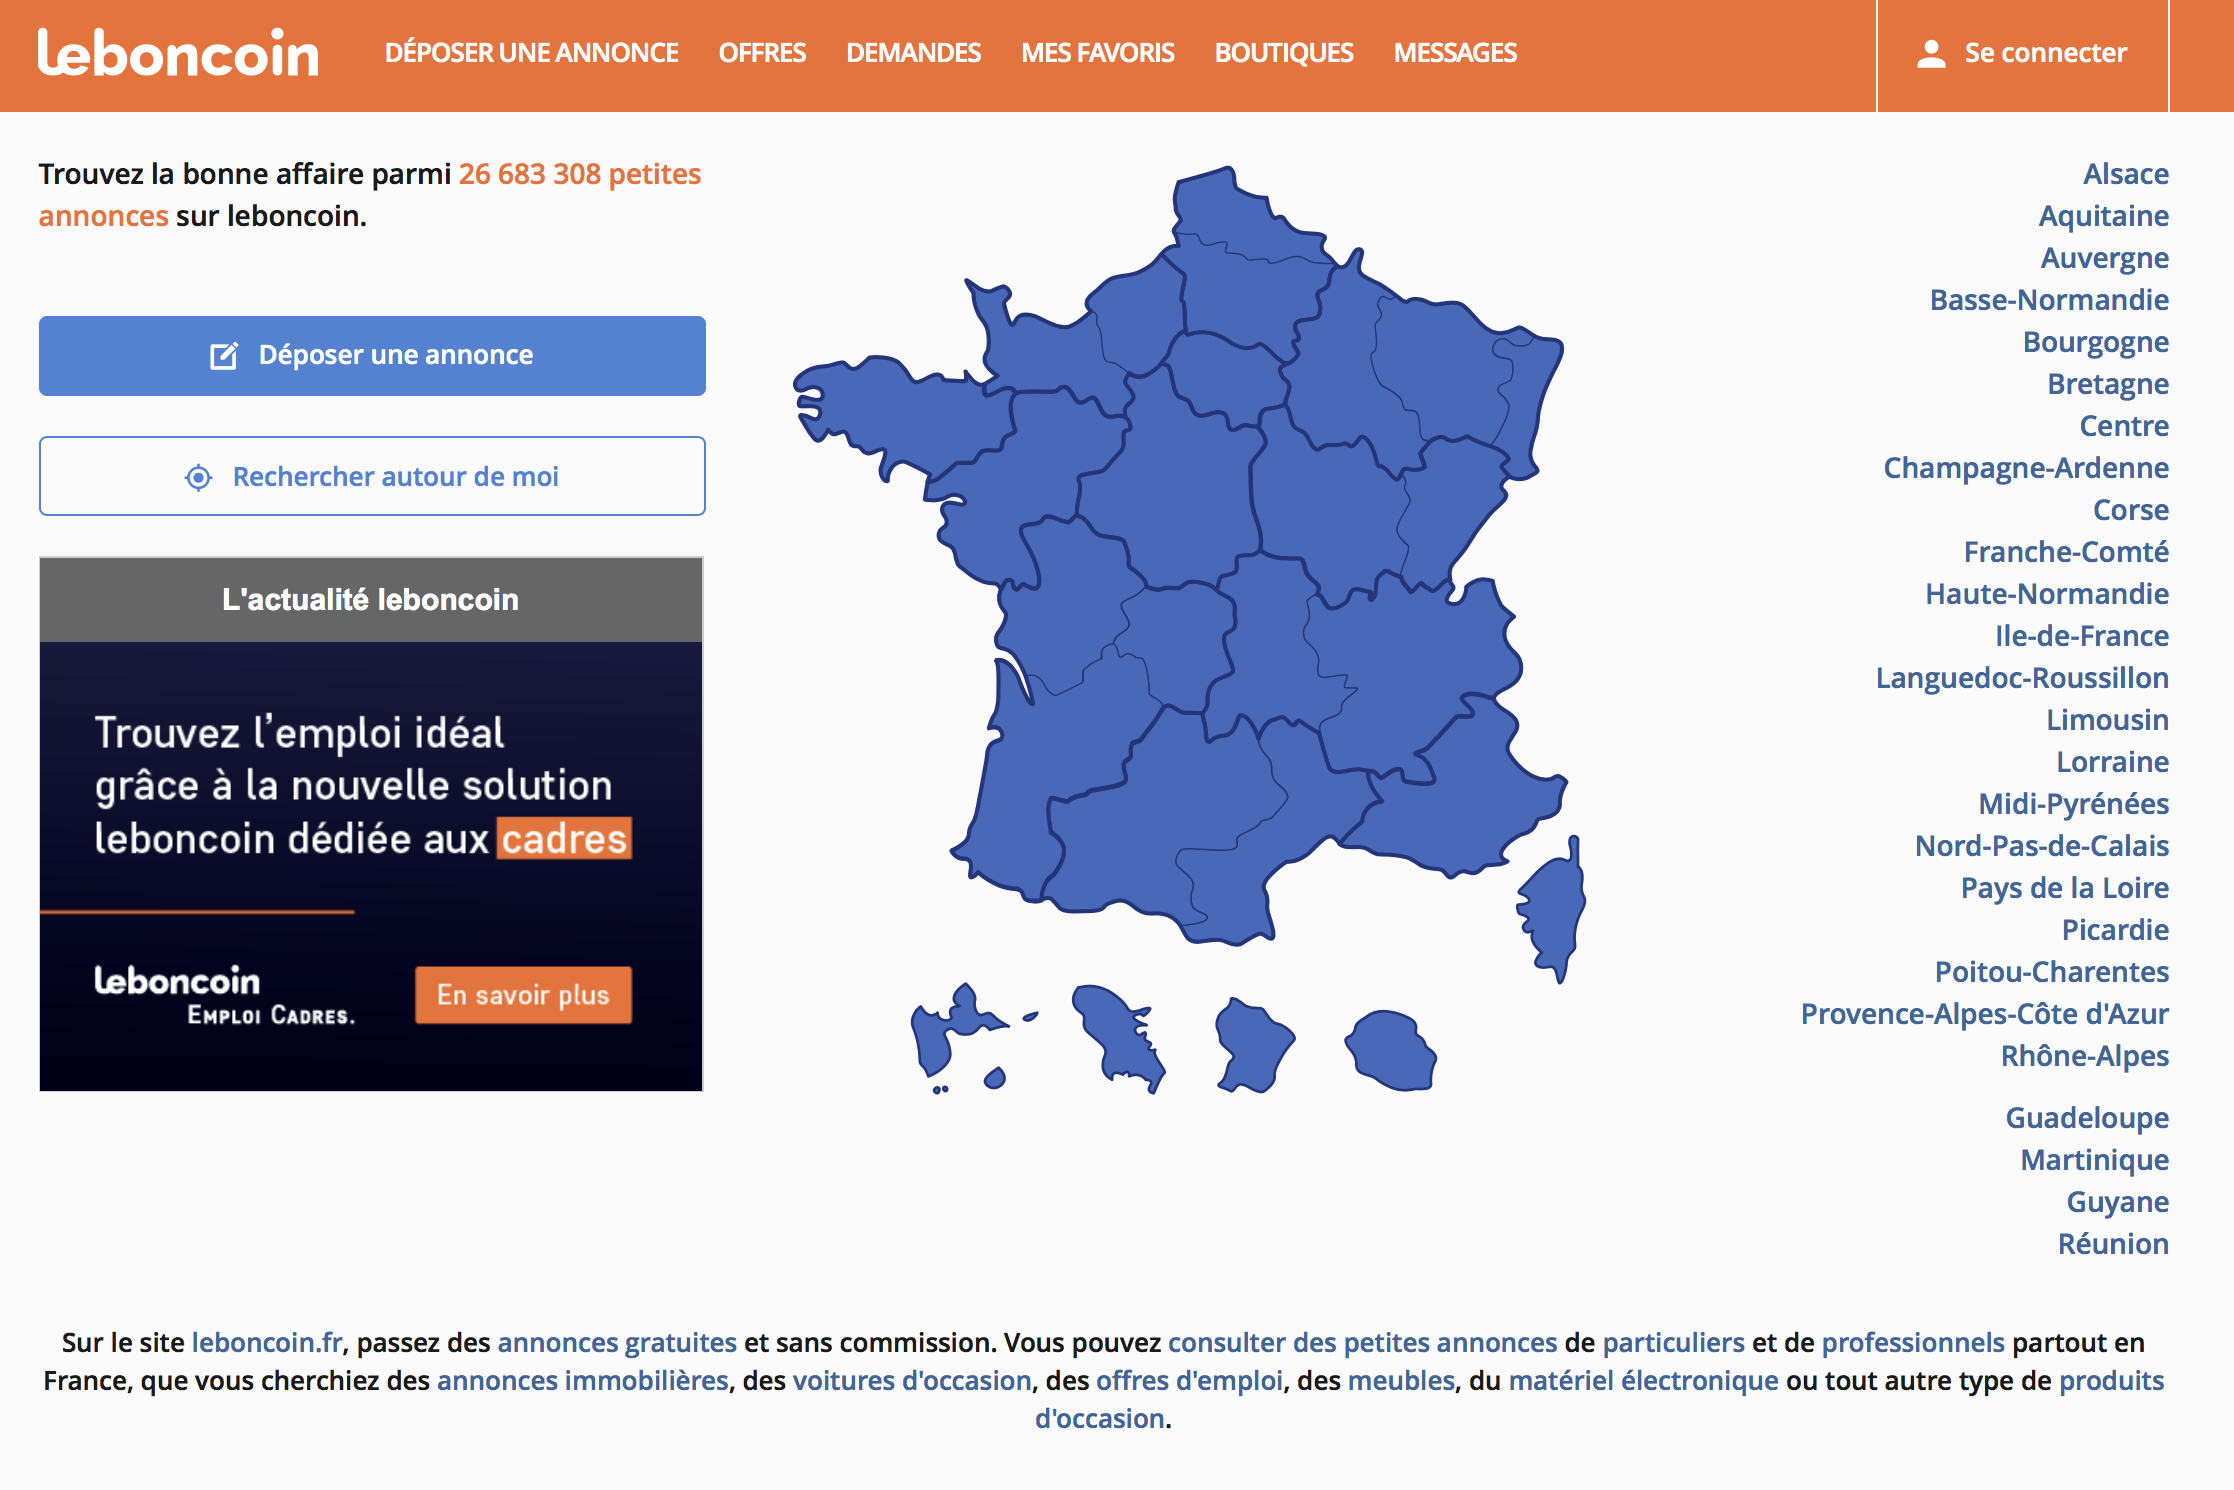 Leboncoin.fr : expérience d'achat des Français 2014, selon le sexe